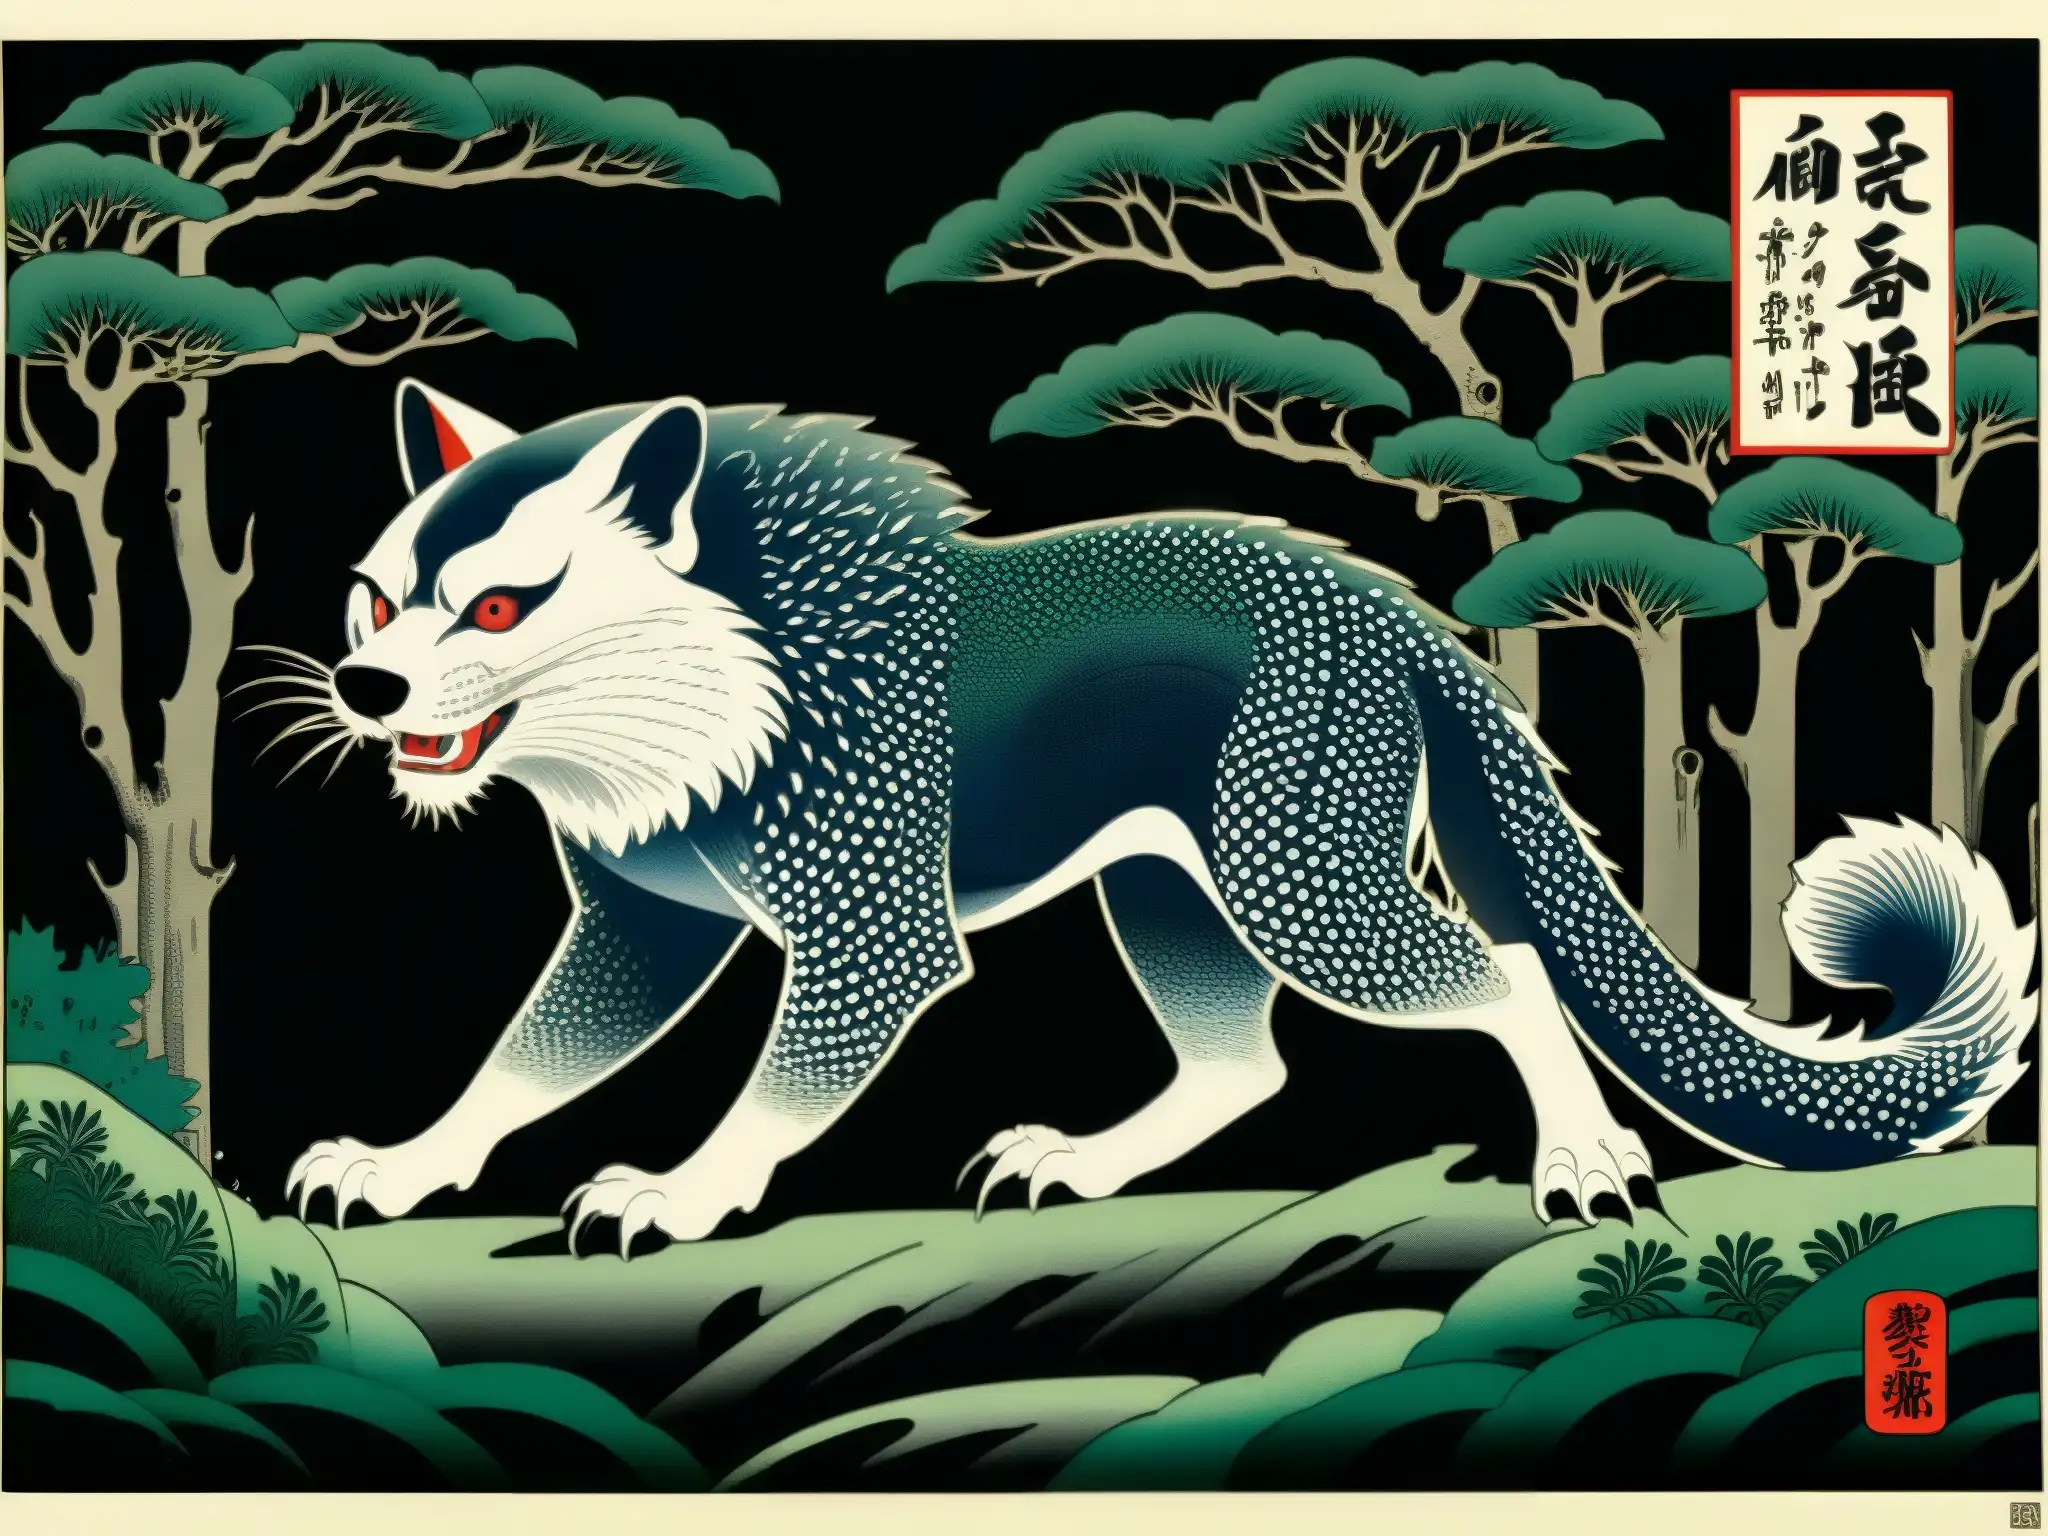 Un grabado en madera japonés detalla un Mujina, criatura mítica, en un bosque sereno